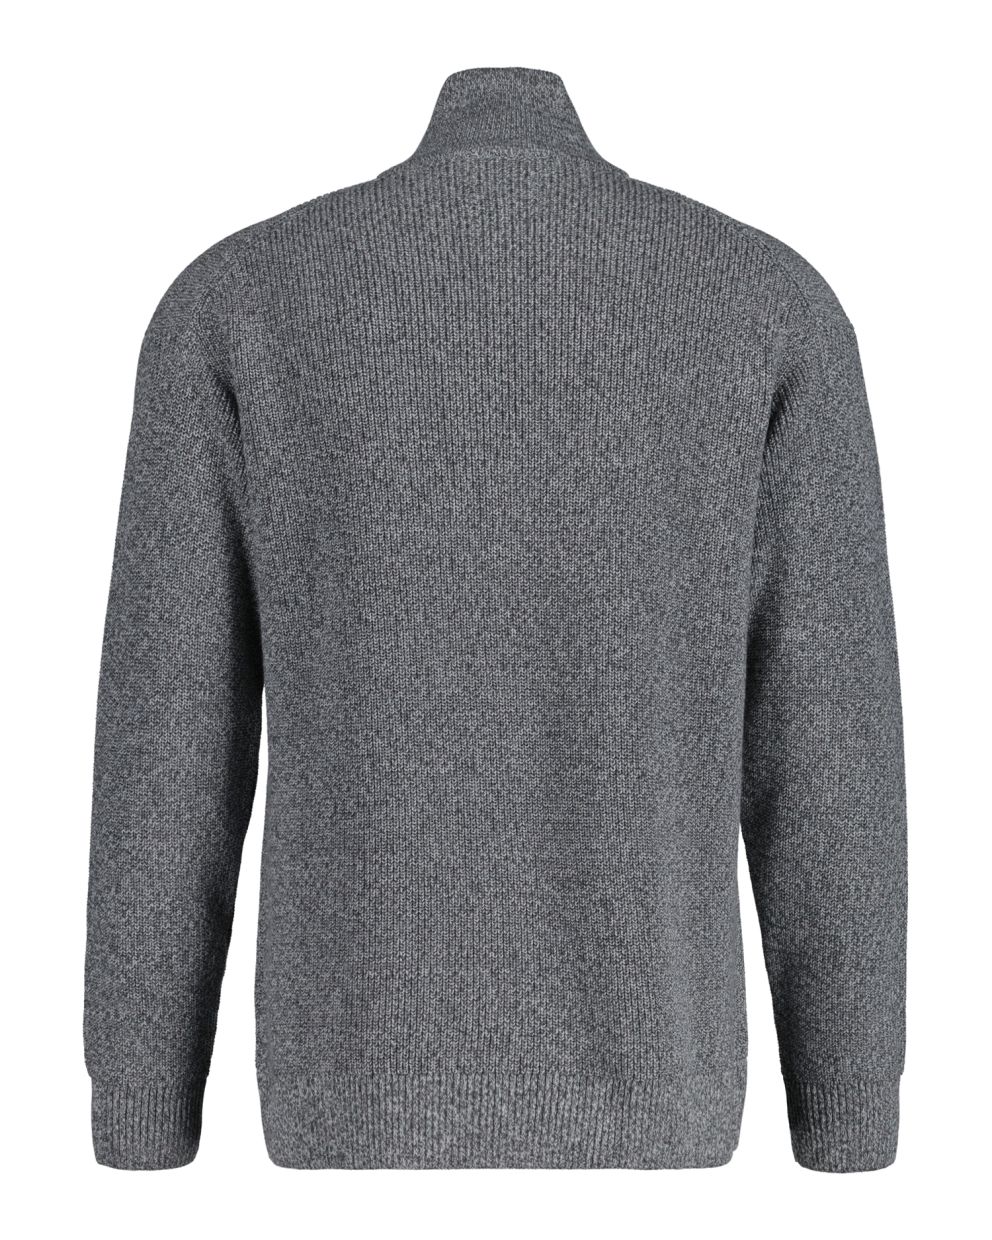 Twisted Yarn Half-Zip Sweater